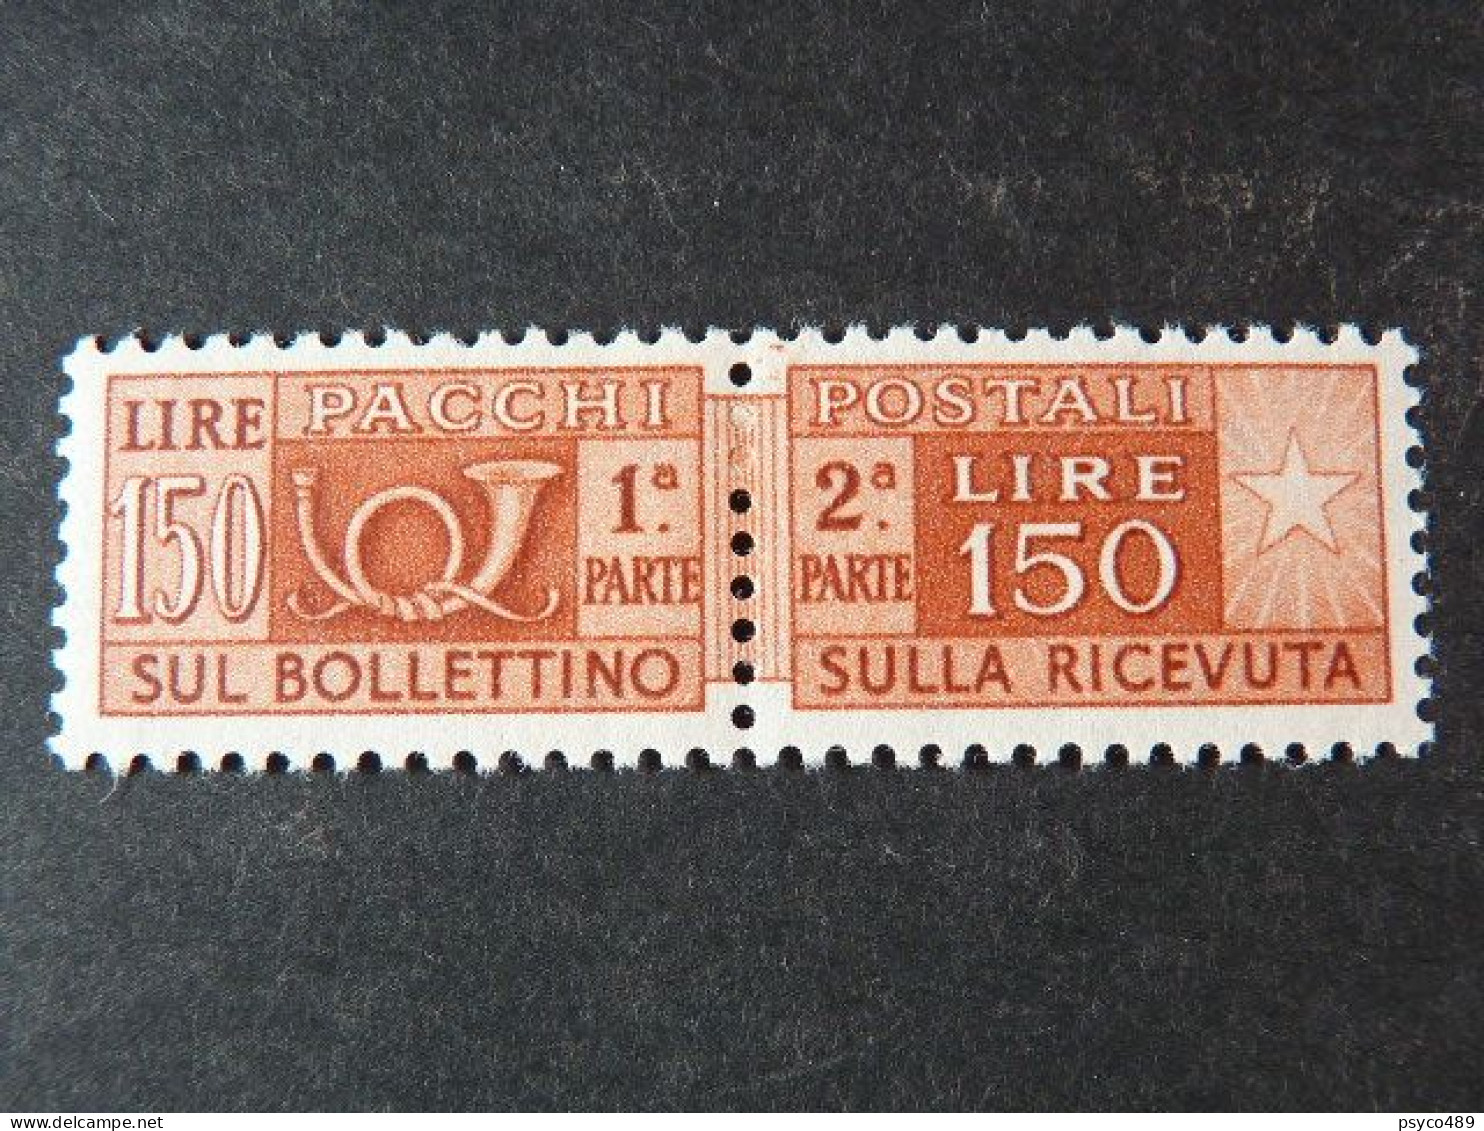 ITALIA Repubblica Pacchi -1955- "Corno Cifra" £. 150 Varietà Filigrana MNH** (descrizione) - Pacchi Postali